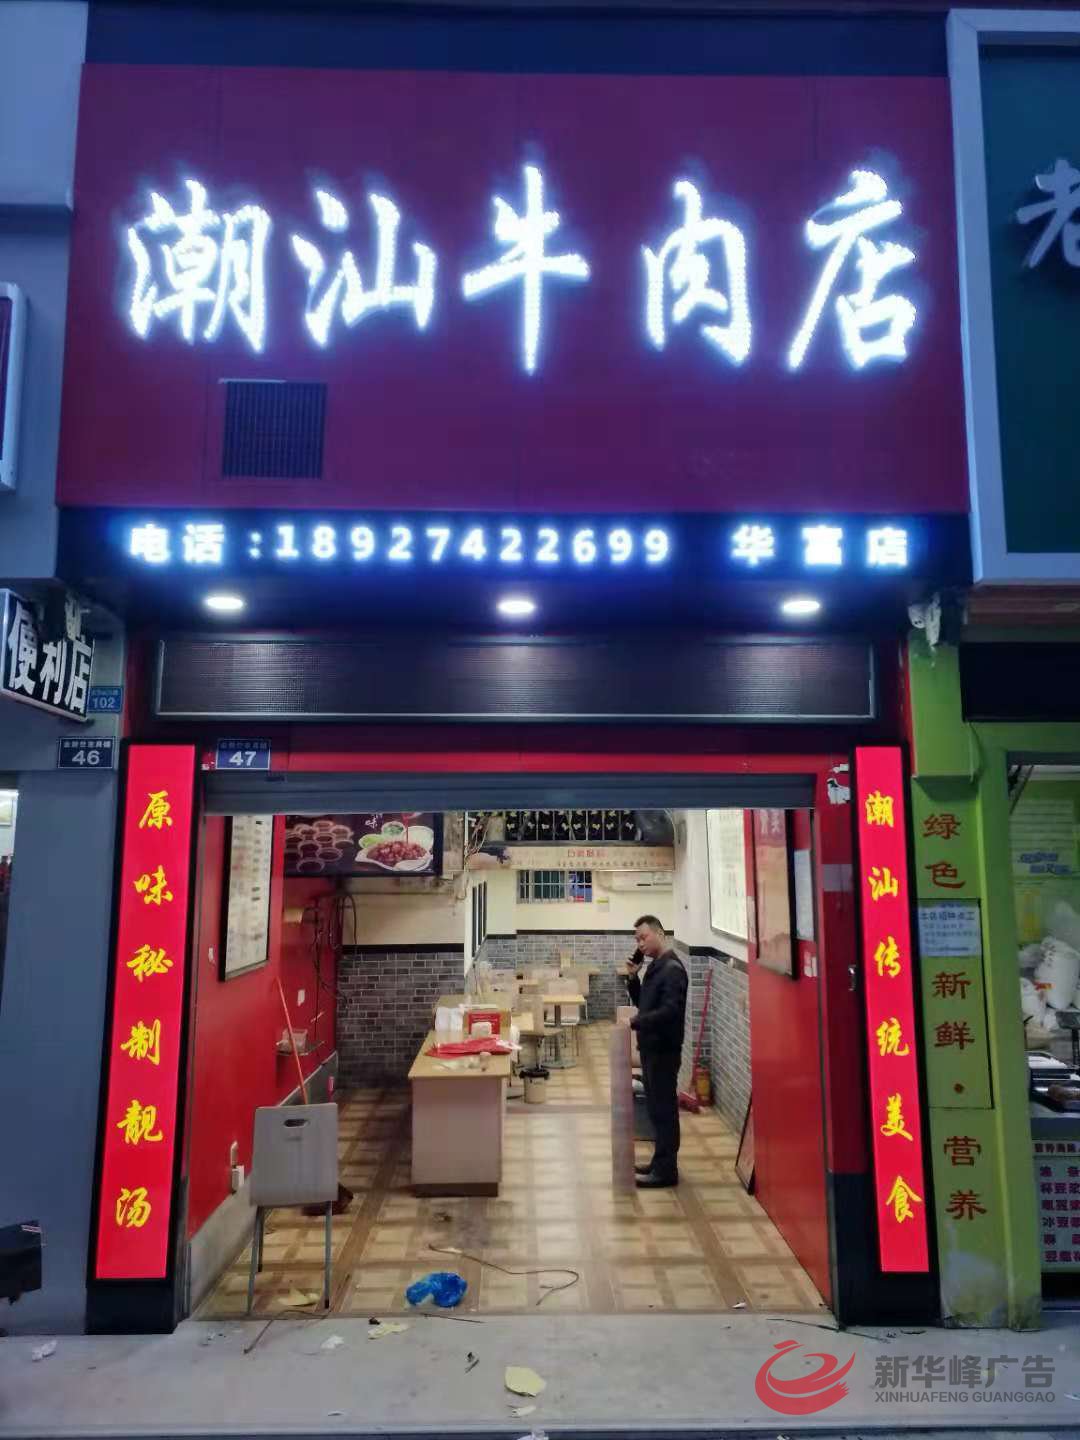 潮汕牛肉店冲孔字招牌